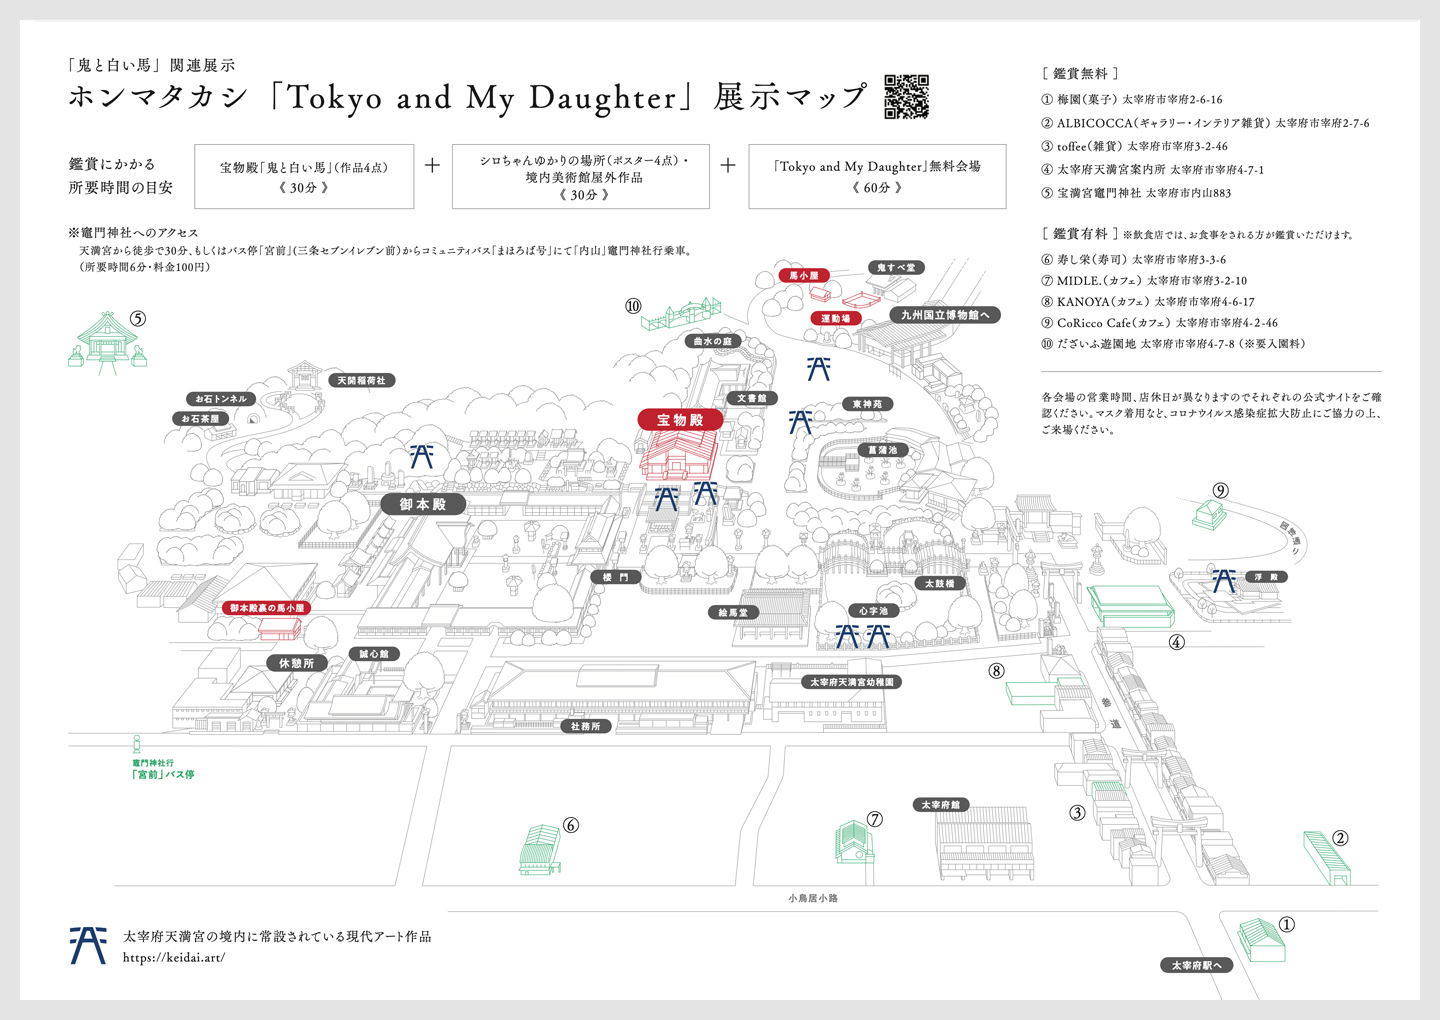 ホンマタカシ「Tokyo and My Daughter」展示マップ